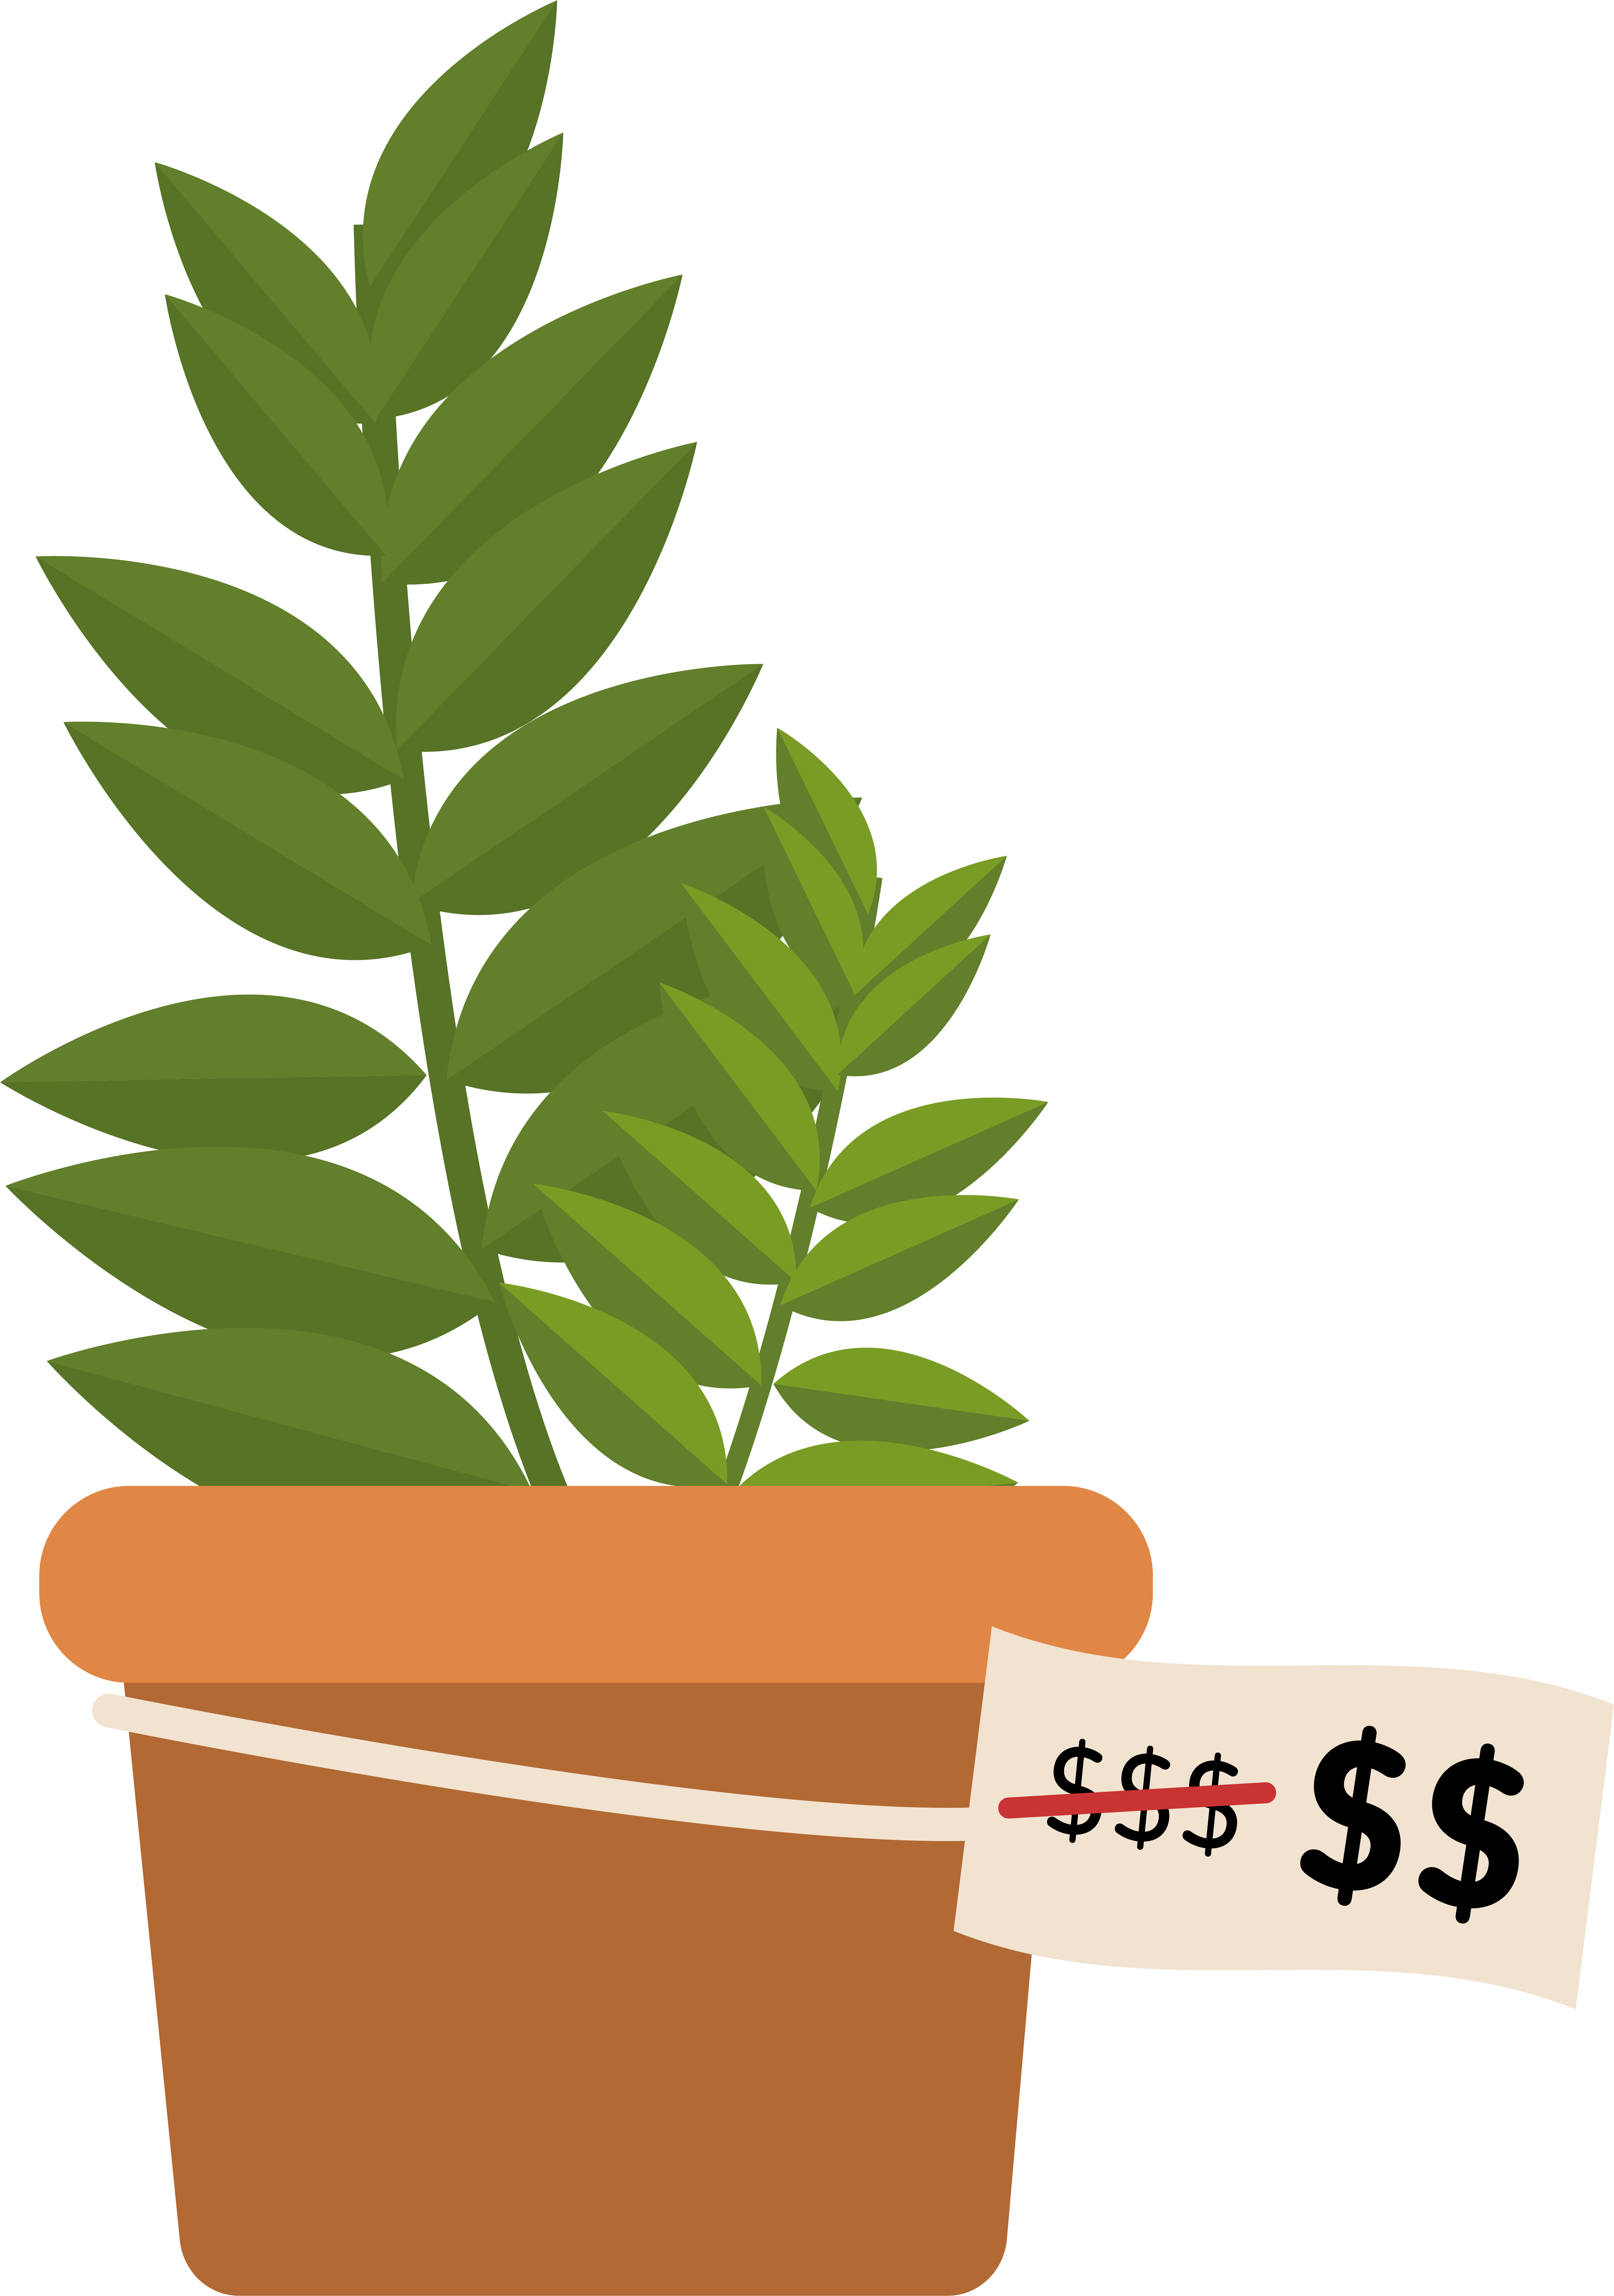 rapiboy planta sobre maceta con su precio tachado para mostrar uno con una unidad de $ menos